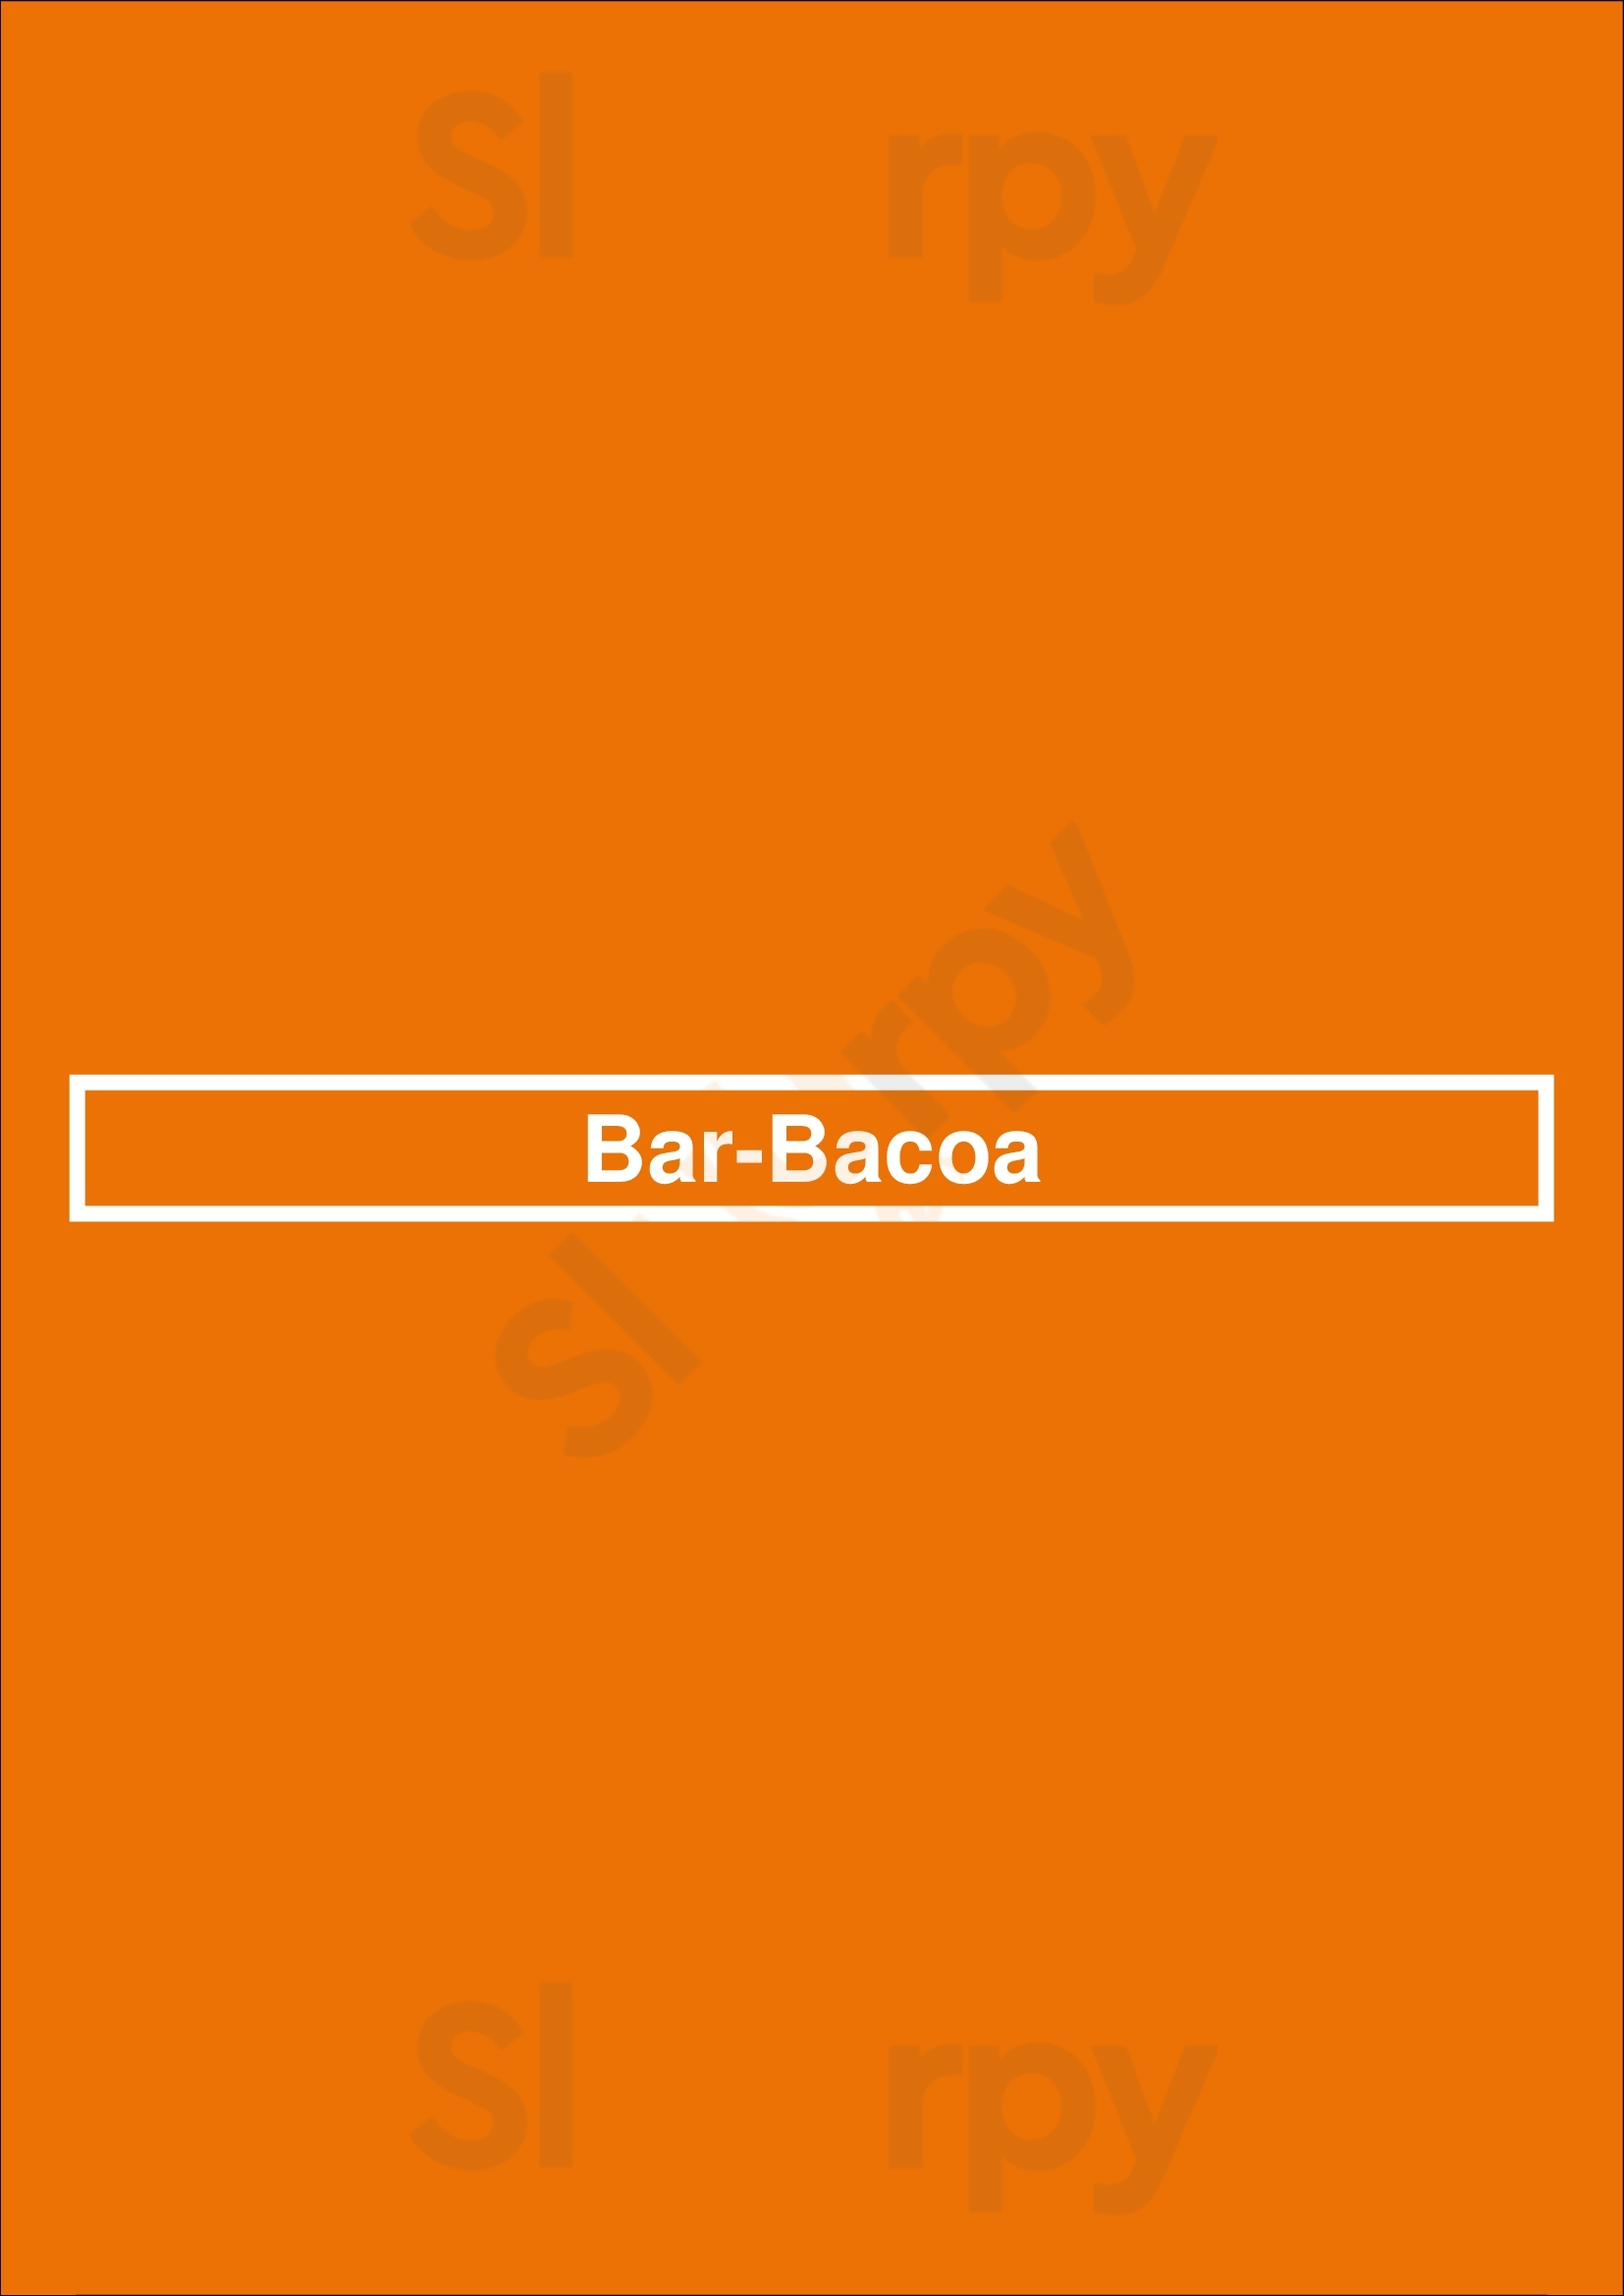 Bar.bacoa Atlanta Menu - 1